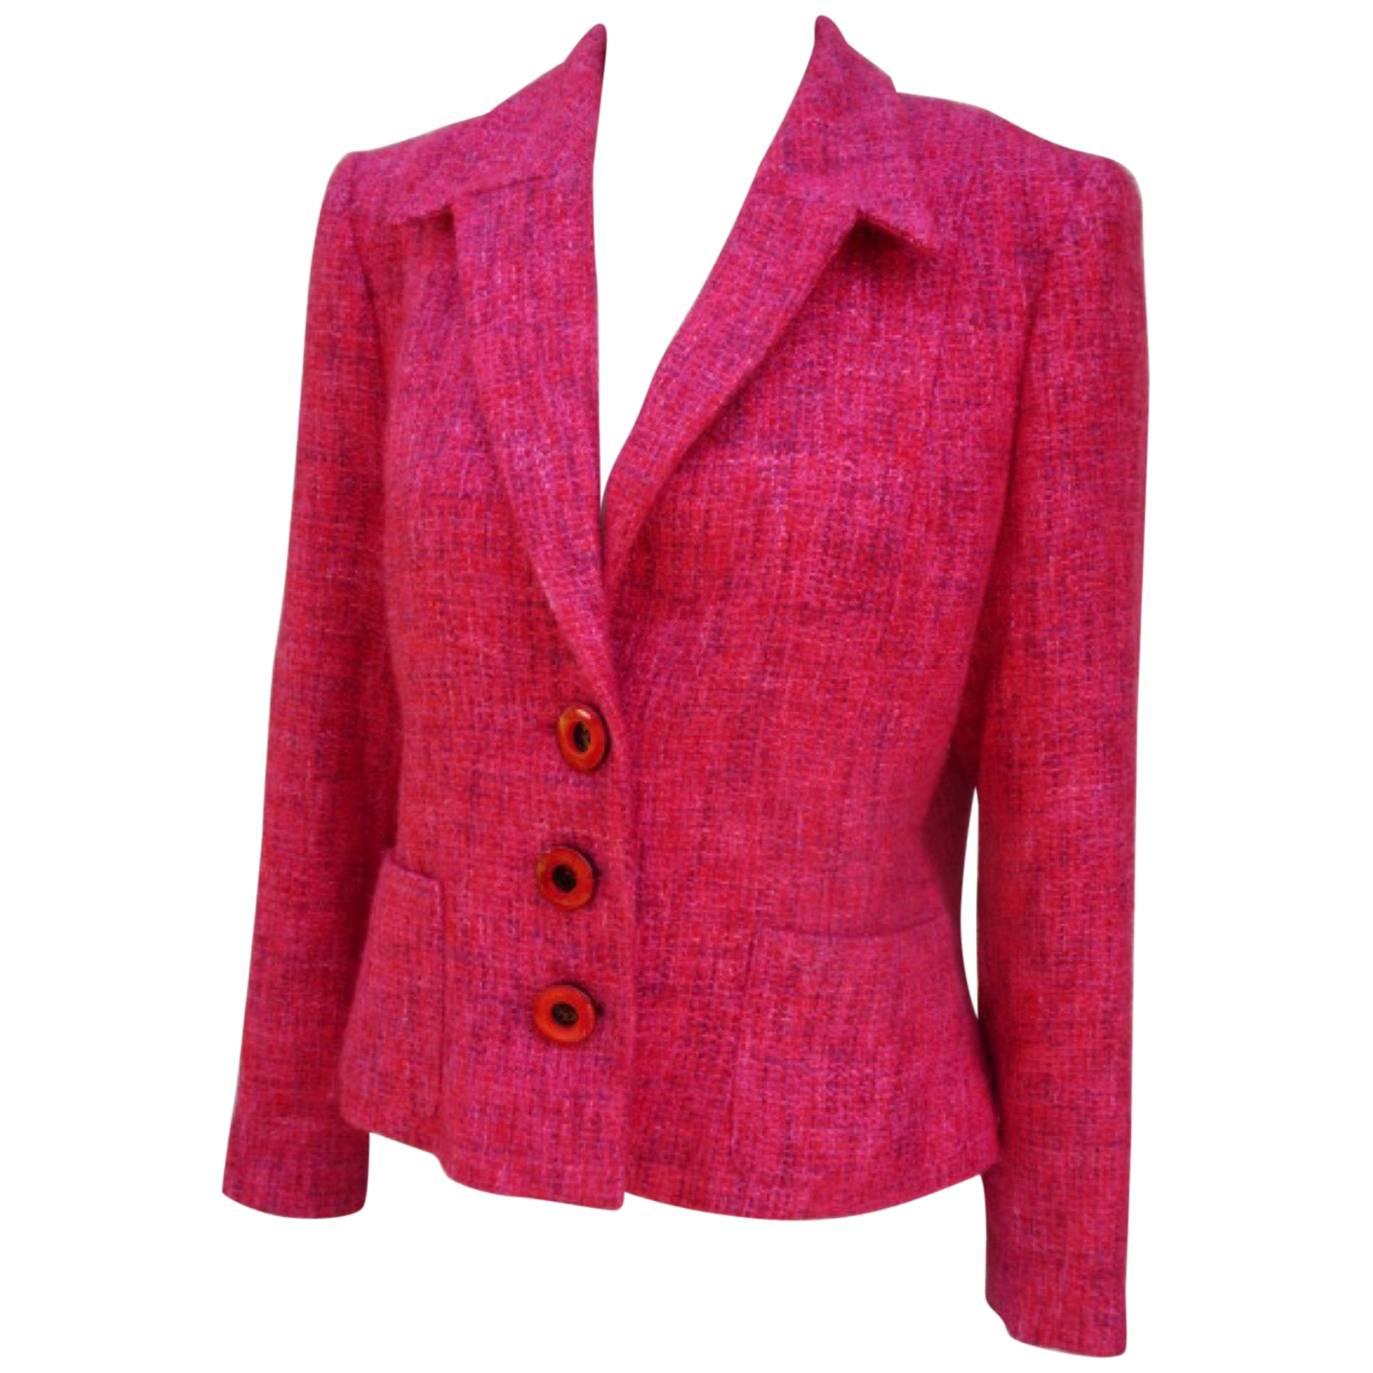 Pierre Balmain Paris red rose light wool jacket